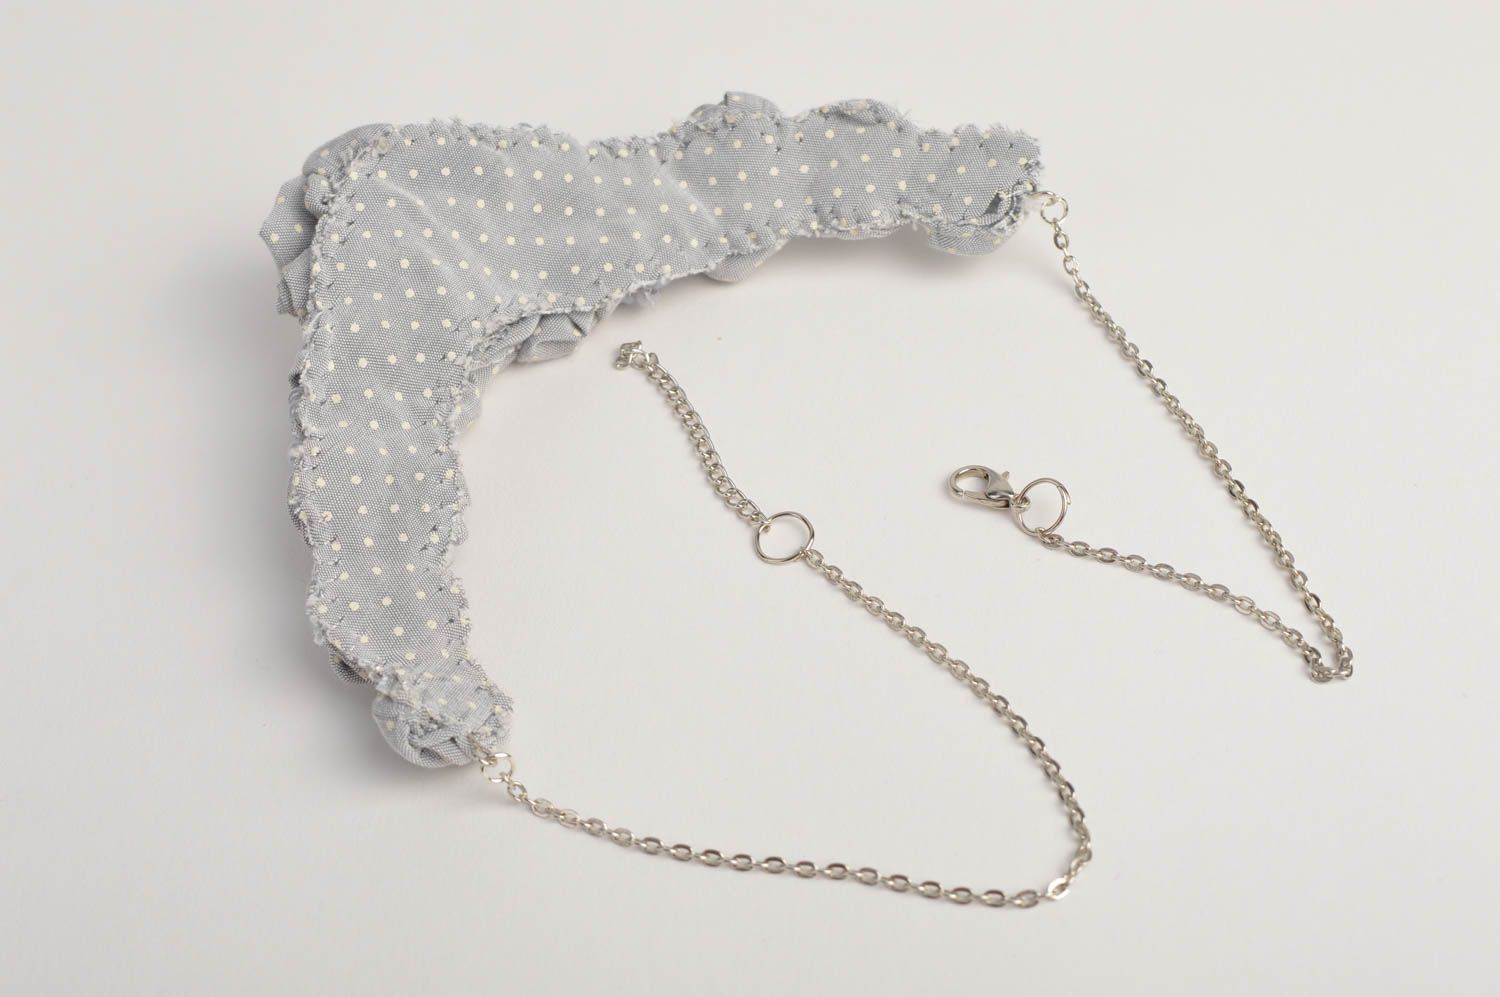 Handmade designer necklace stylish grey necklace festive elegant jewelry photo 4